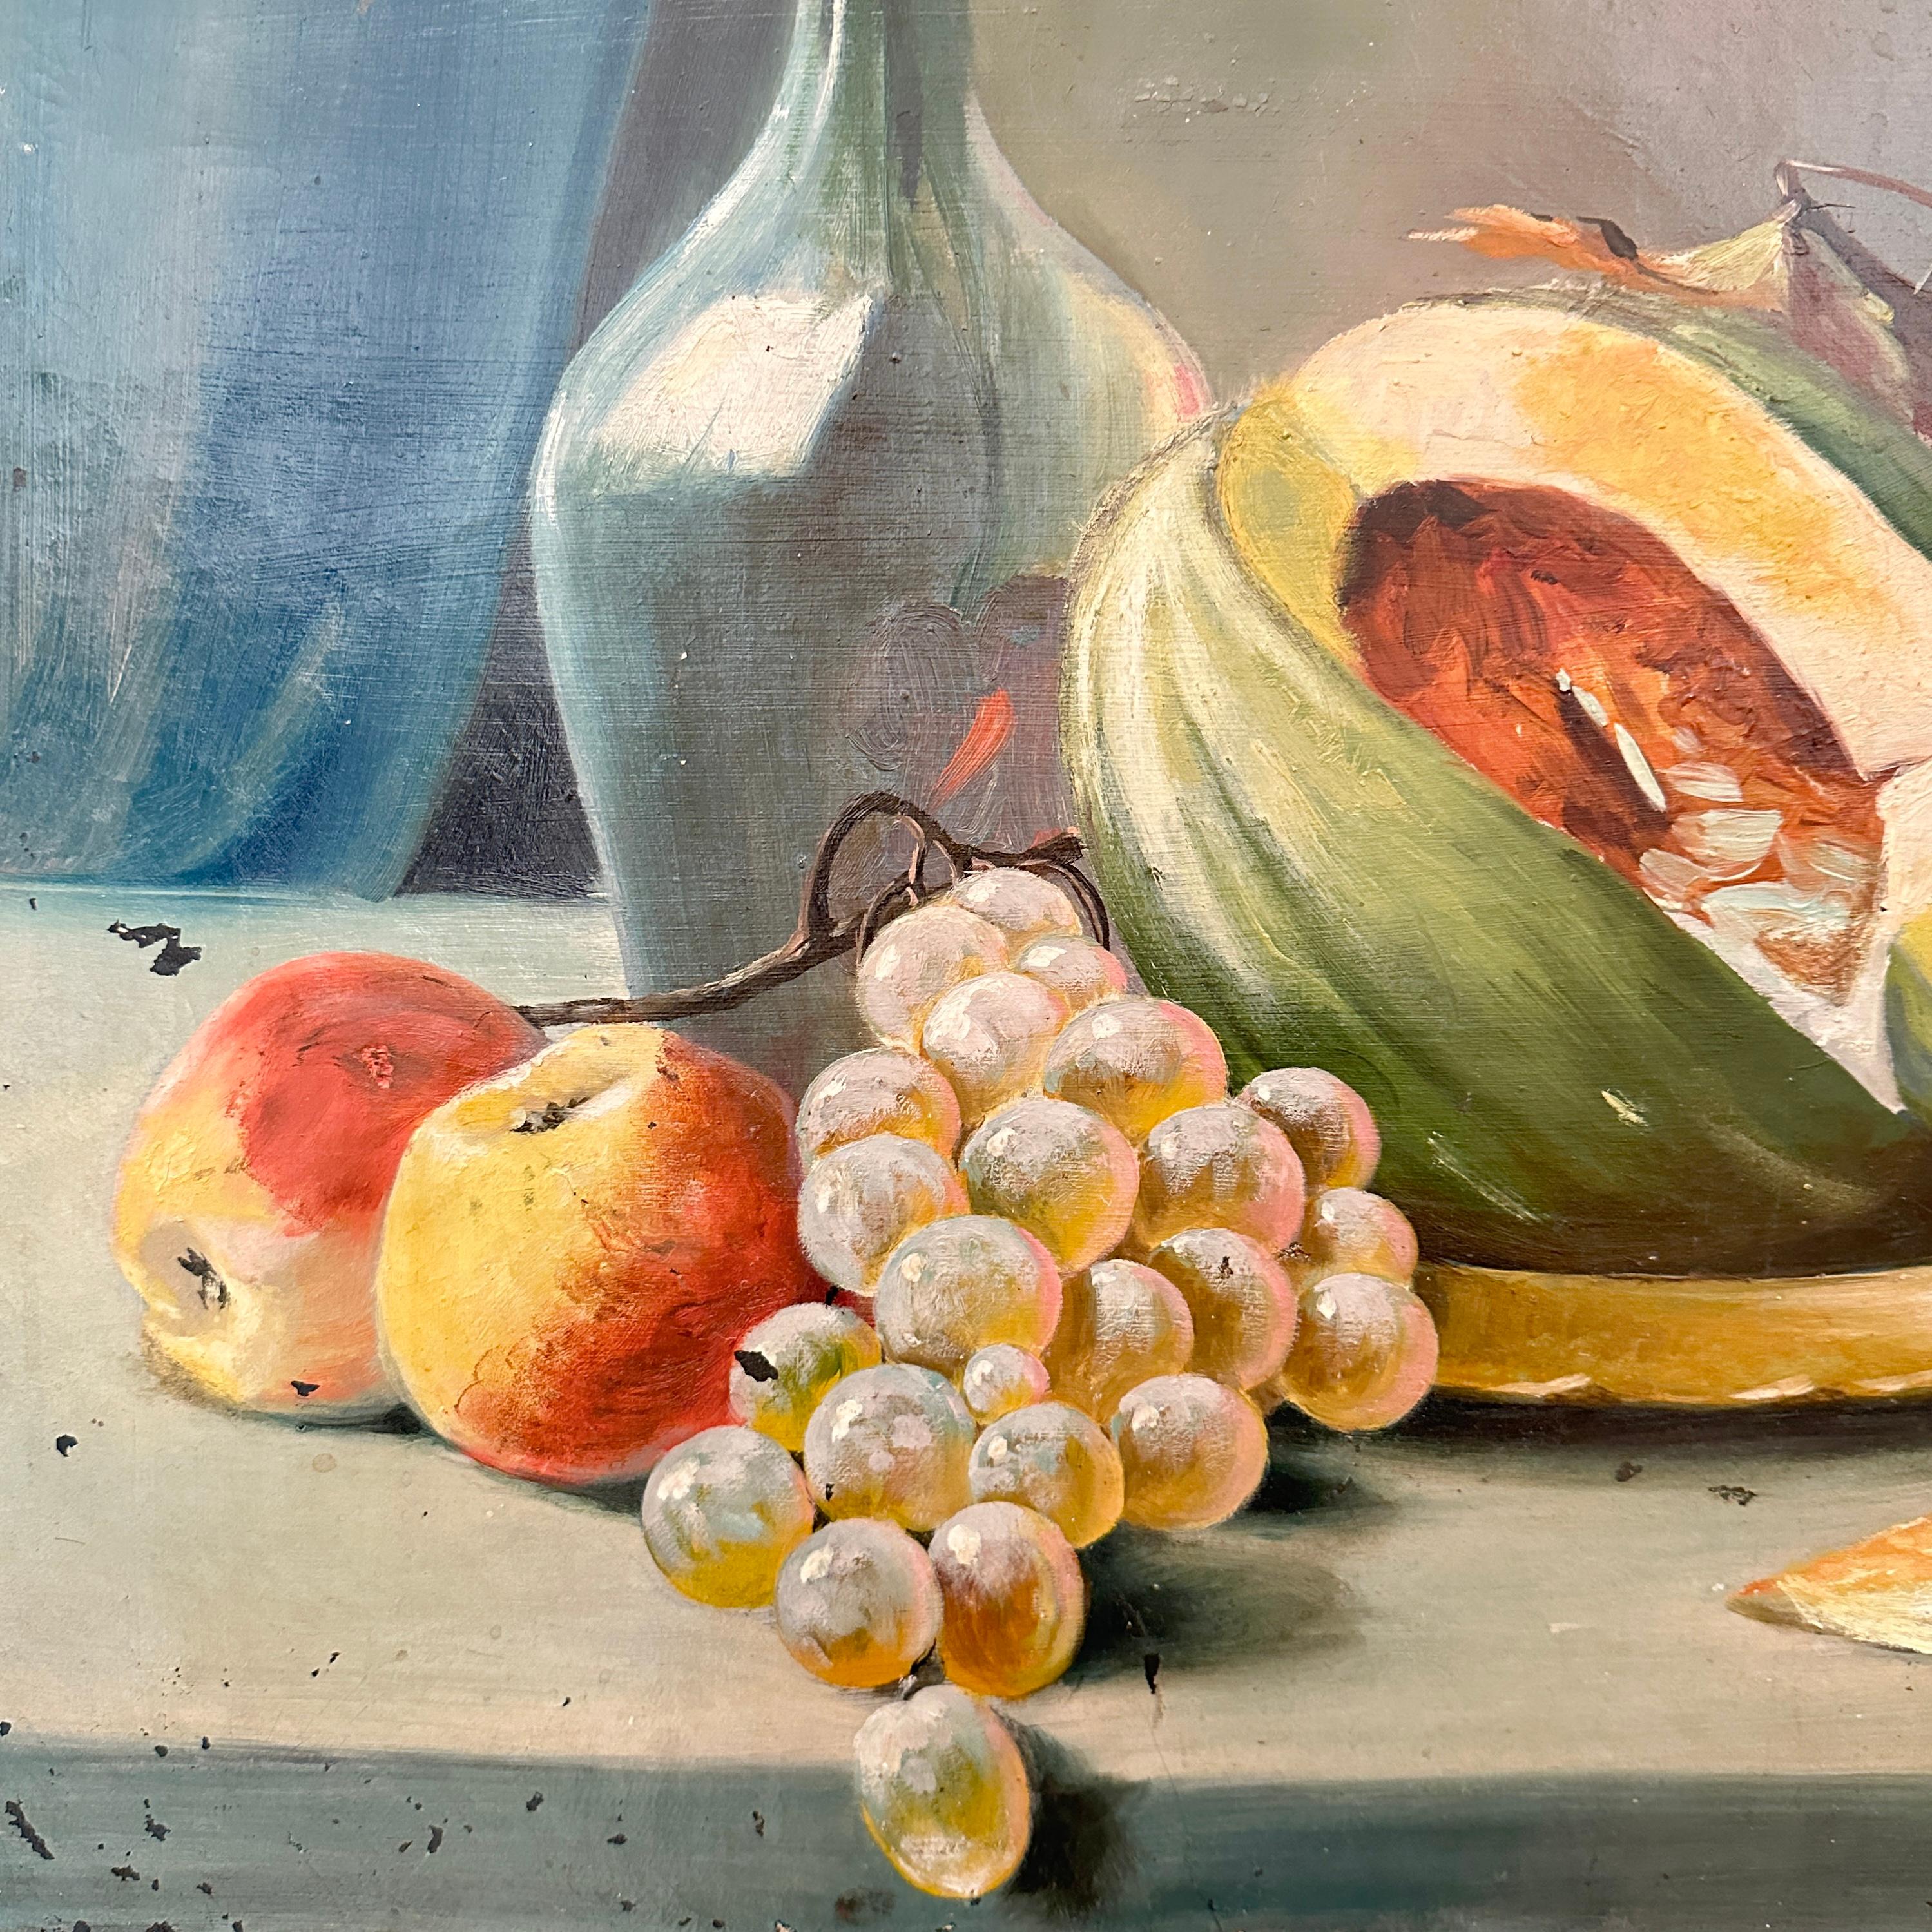 Dieses schöne Ölgemälde aus dem frühen 19. Jahrhundert ist ein Stillleben des Biedermeier und wurde um 1820 gemalt.
Es bleibt in einem fantastischen Originalzustand und zeigt eine Tischlandschaft mit Blumen und Früchten. Ein großartiges Bild!
Ein